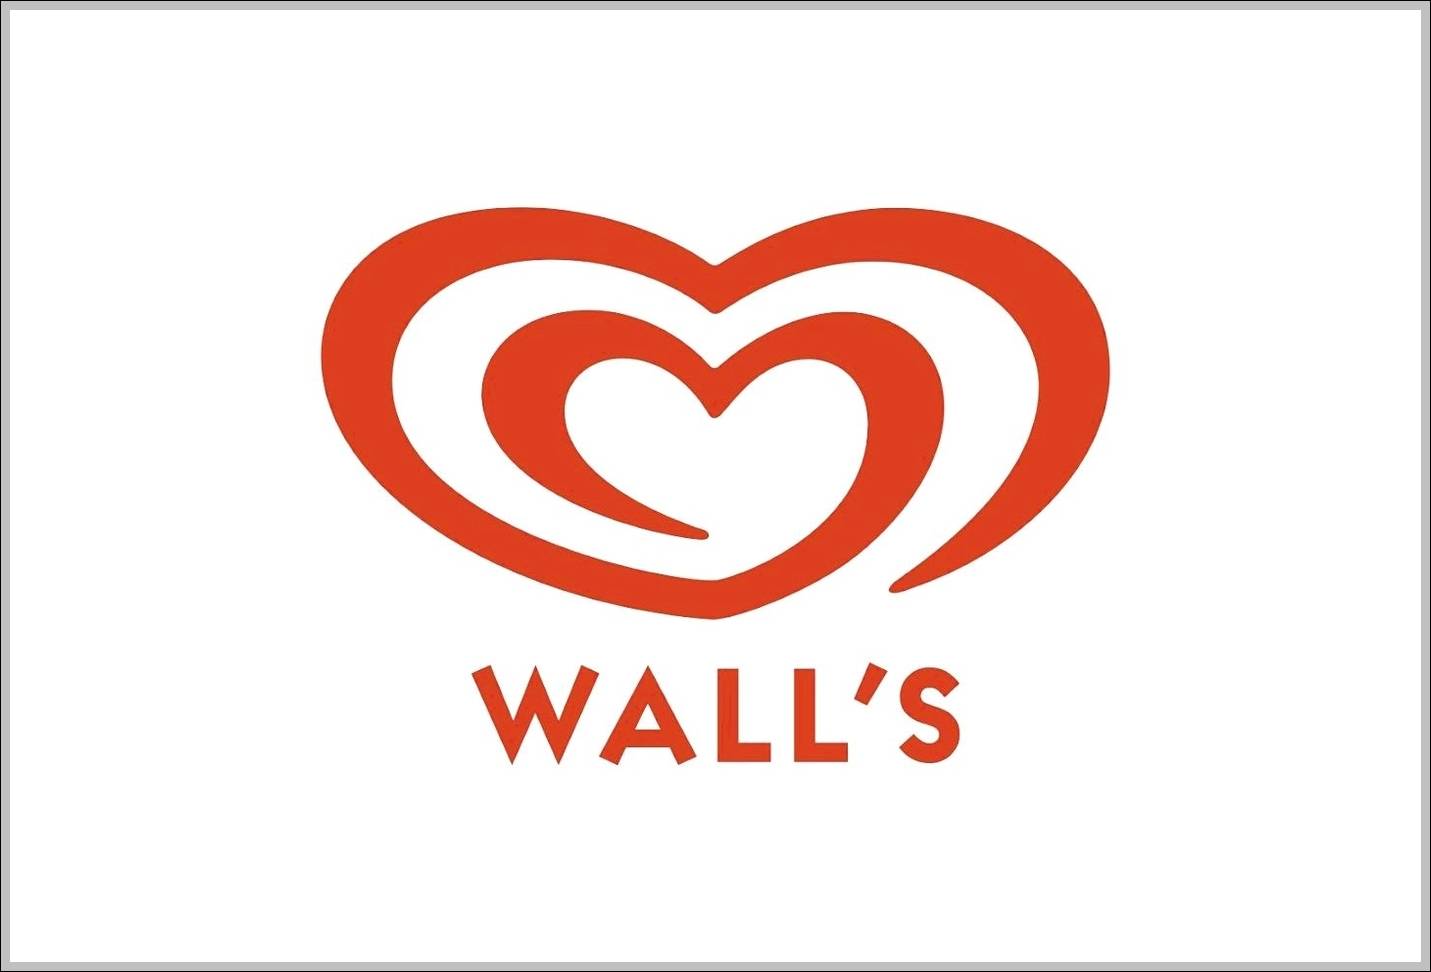 Walls sign